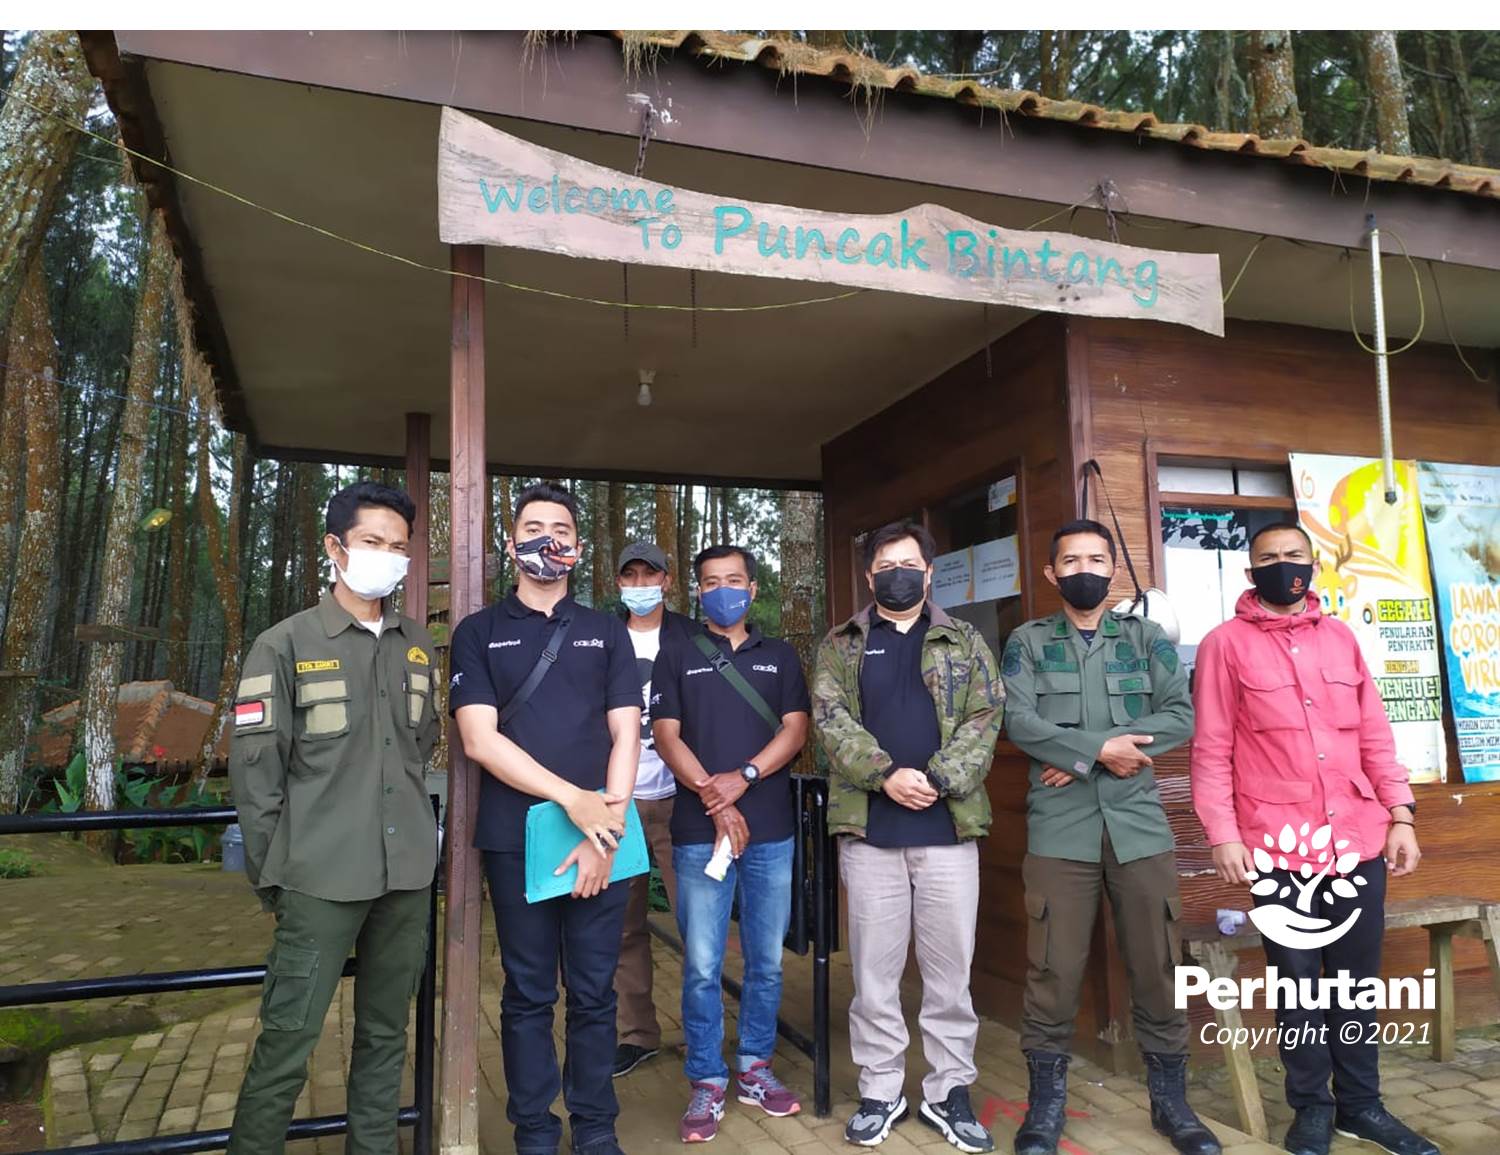 Perhutani Perhutani Terima Kunjungan Tim Monitoring Disparbud Di Wisata Puncak Bintang Bandung 6133